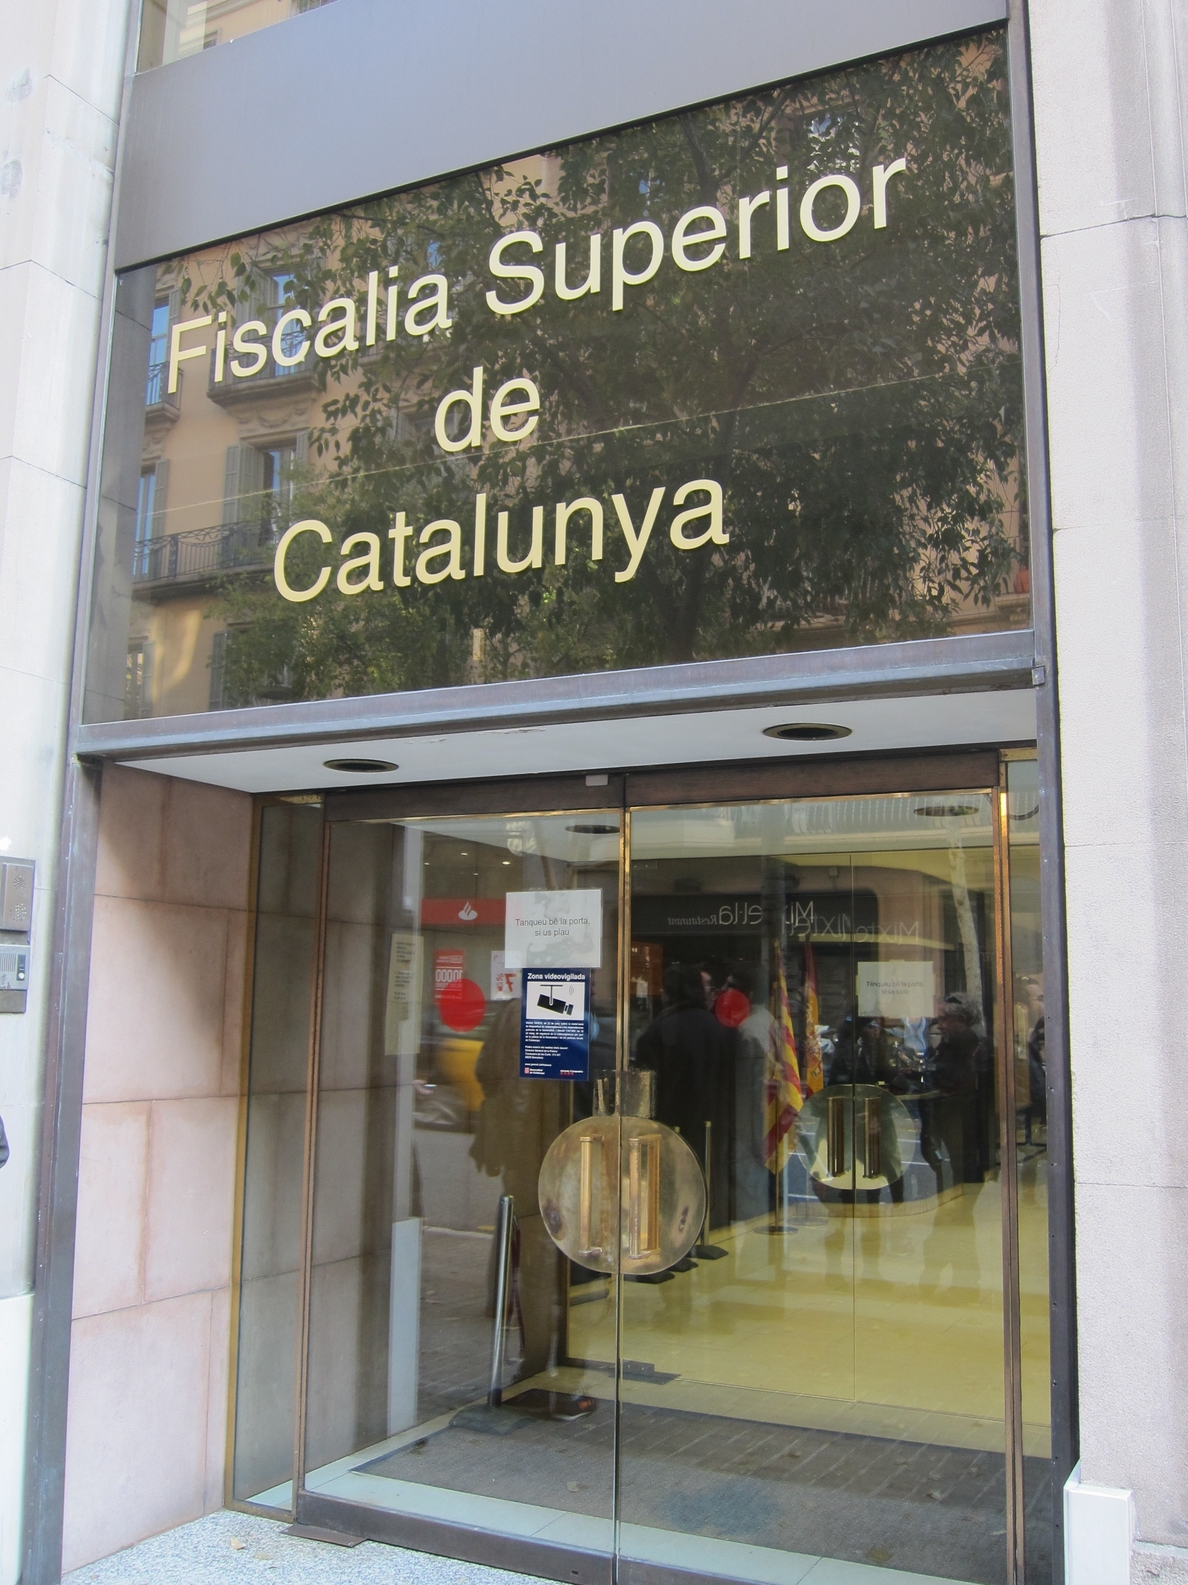 Desalojan la Fiscalía Superior de Cataluña por un incendio